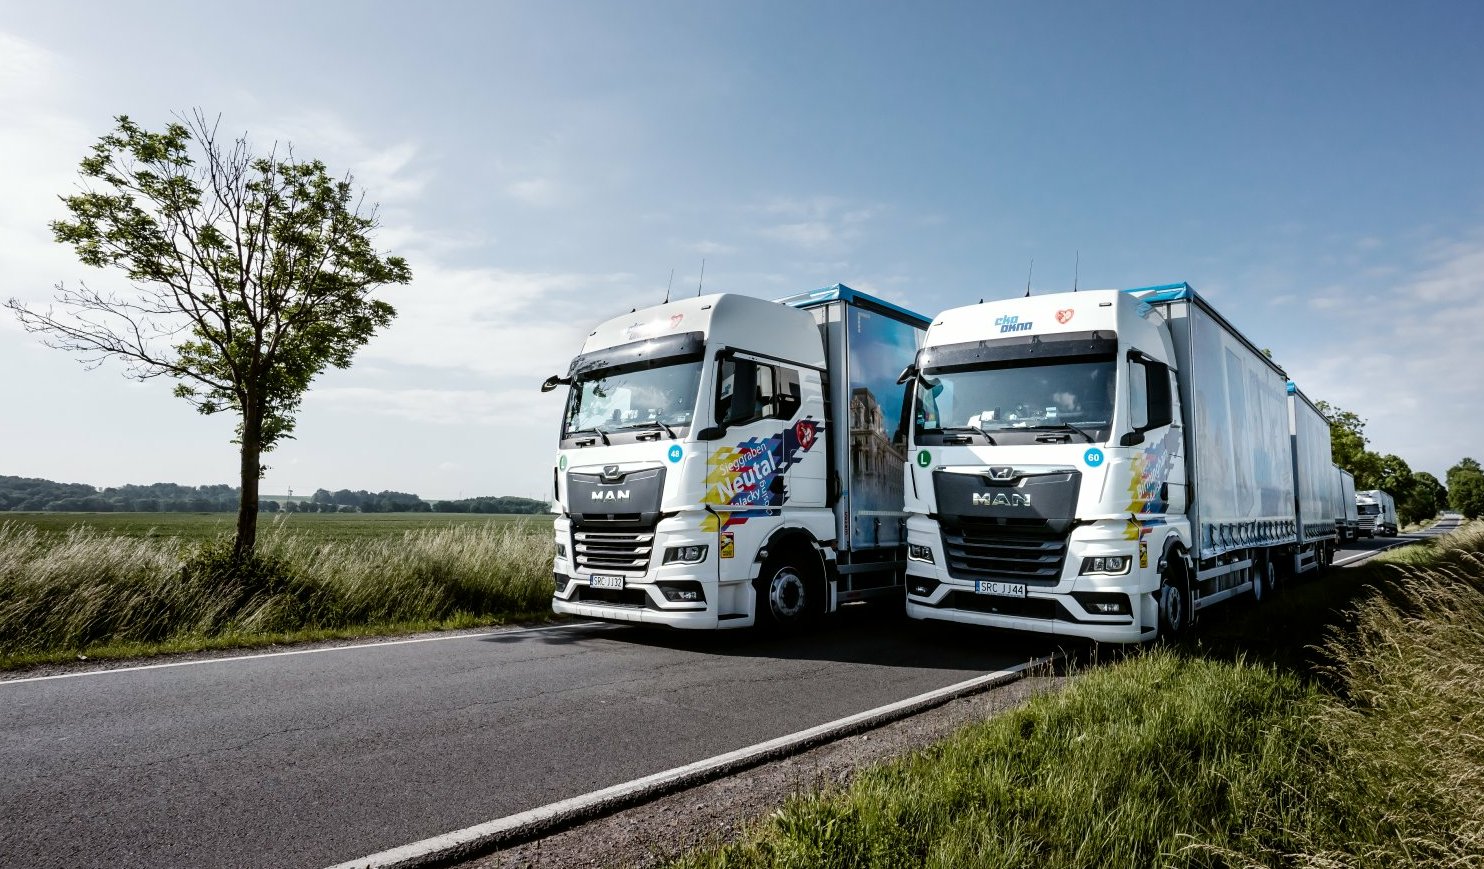 Nous nous développons dans tous les domaines, y compris les transports. En 2021, notre flotte s'enrichira de 100 nouveaux camions.